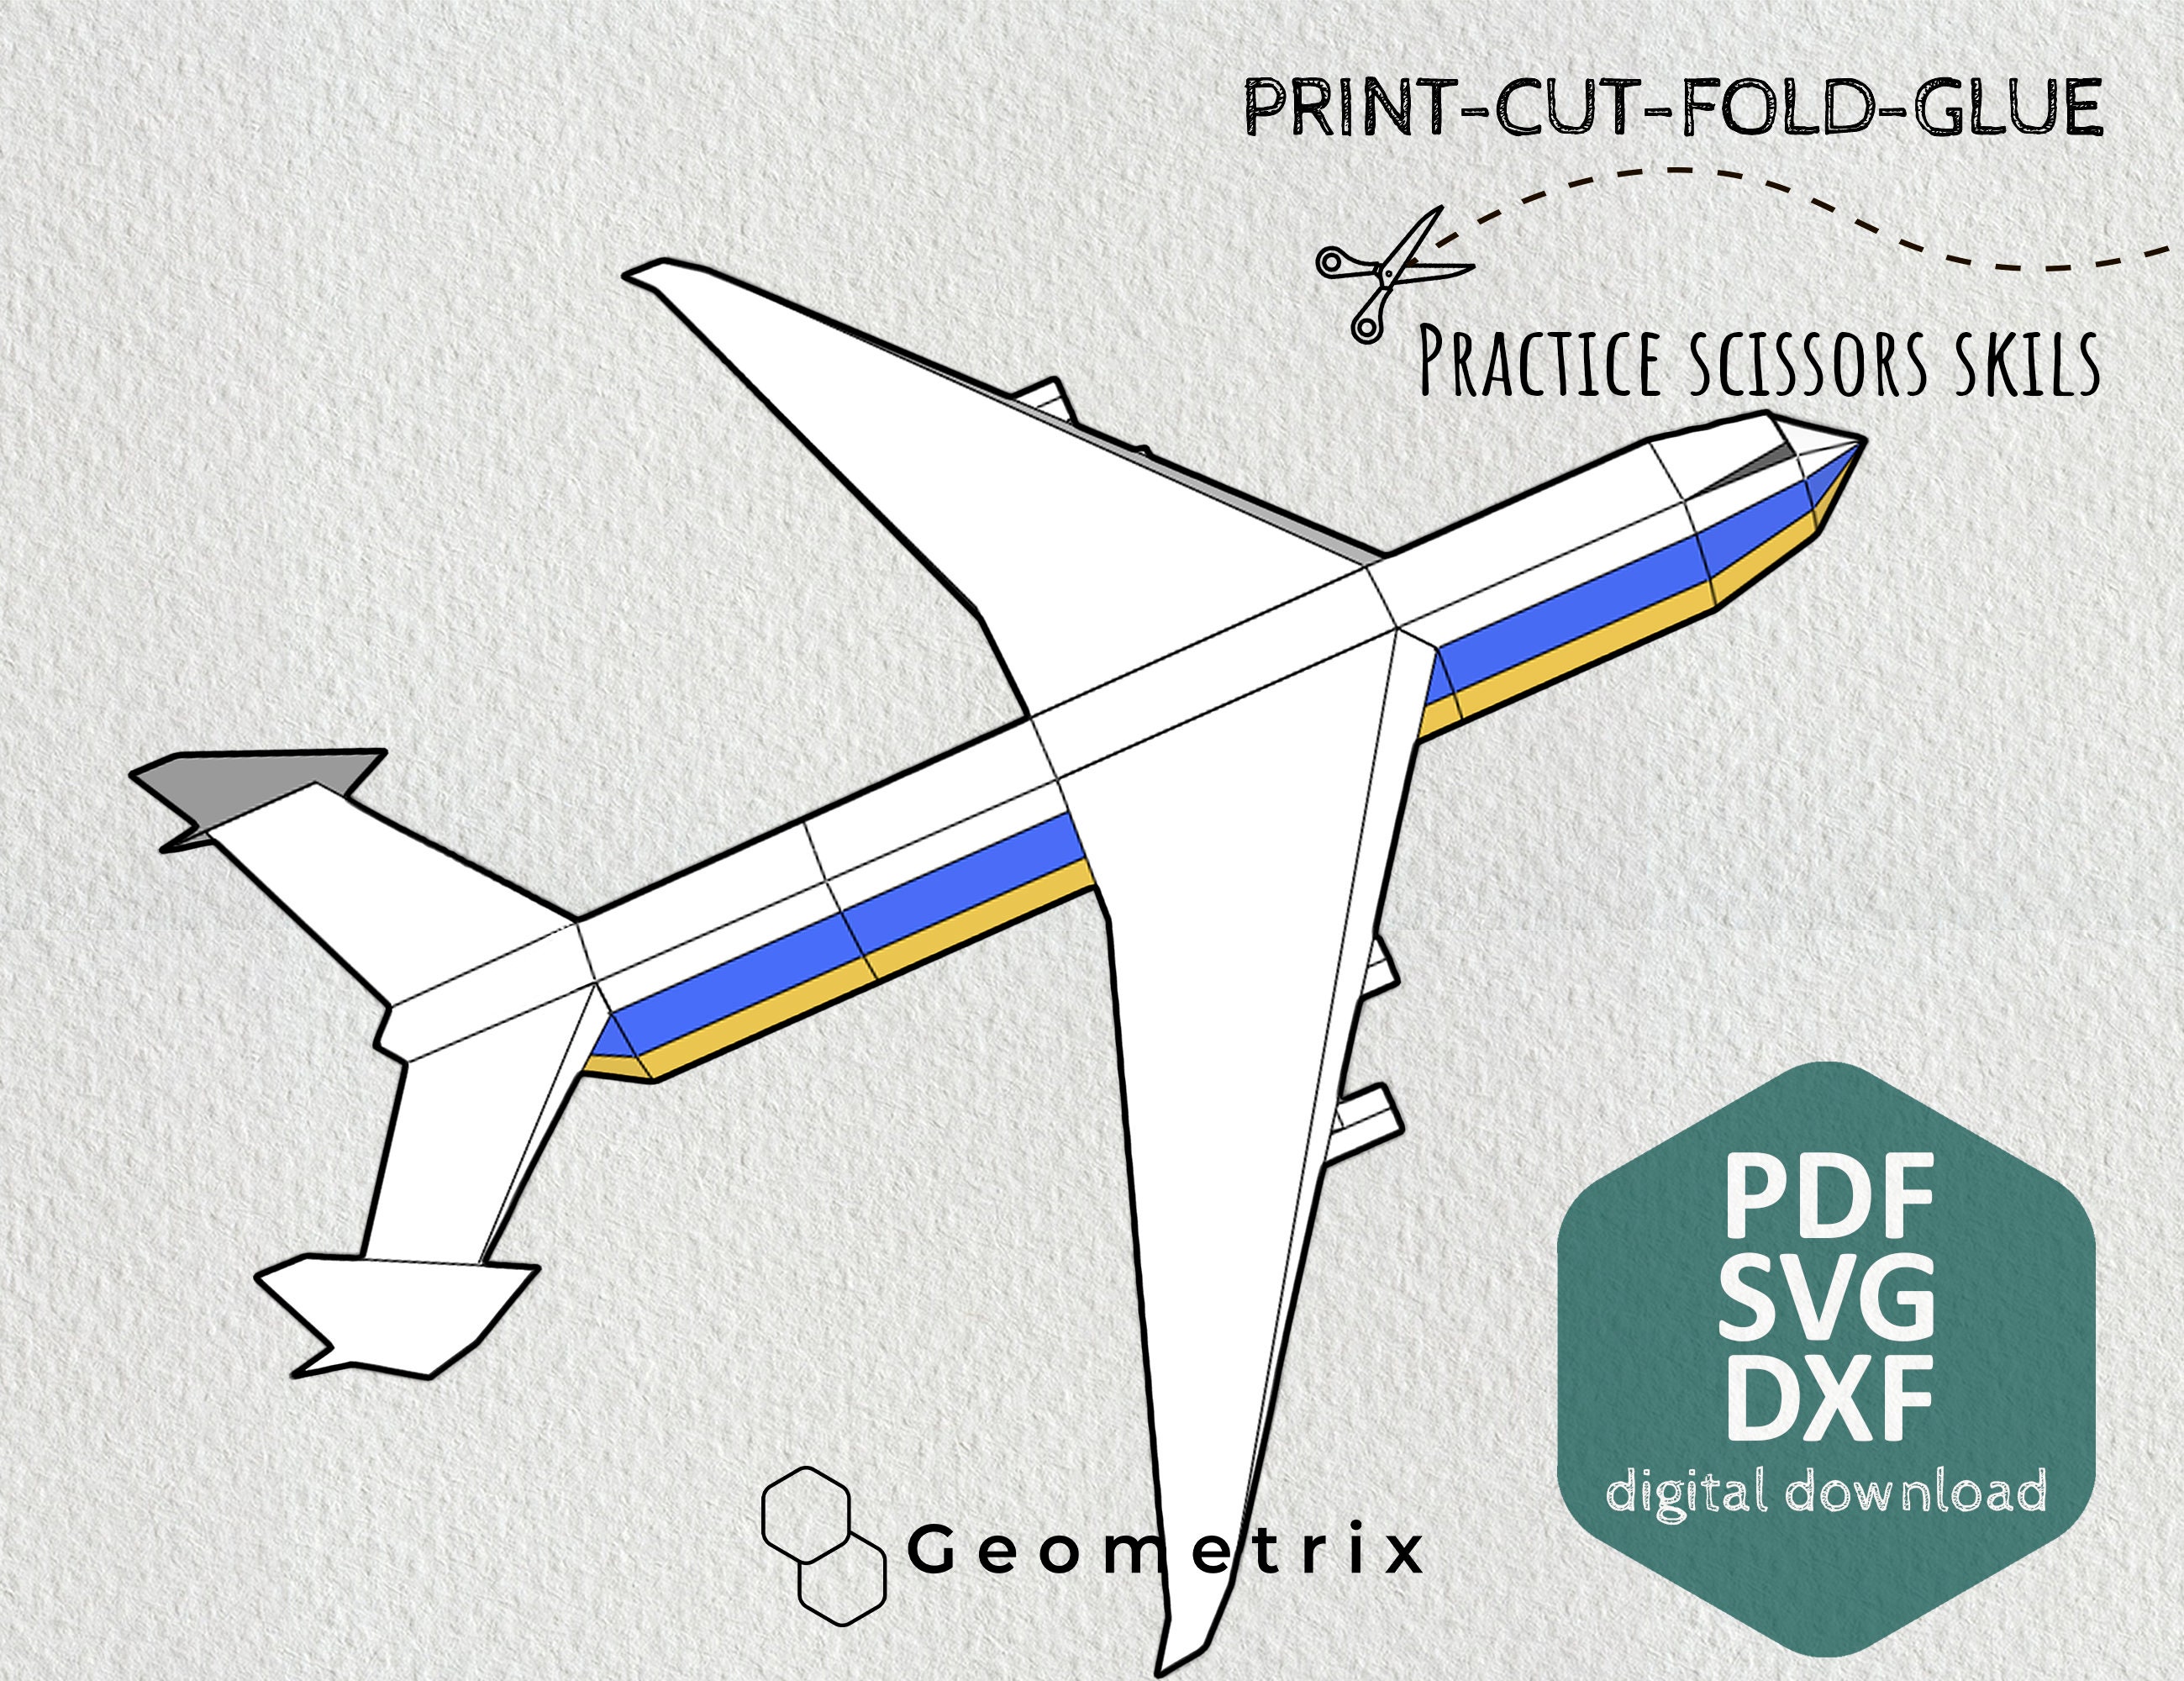 Paper Flight 2 - Jogue Paper Flight 2 Jogo Online